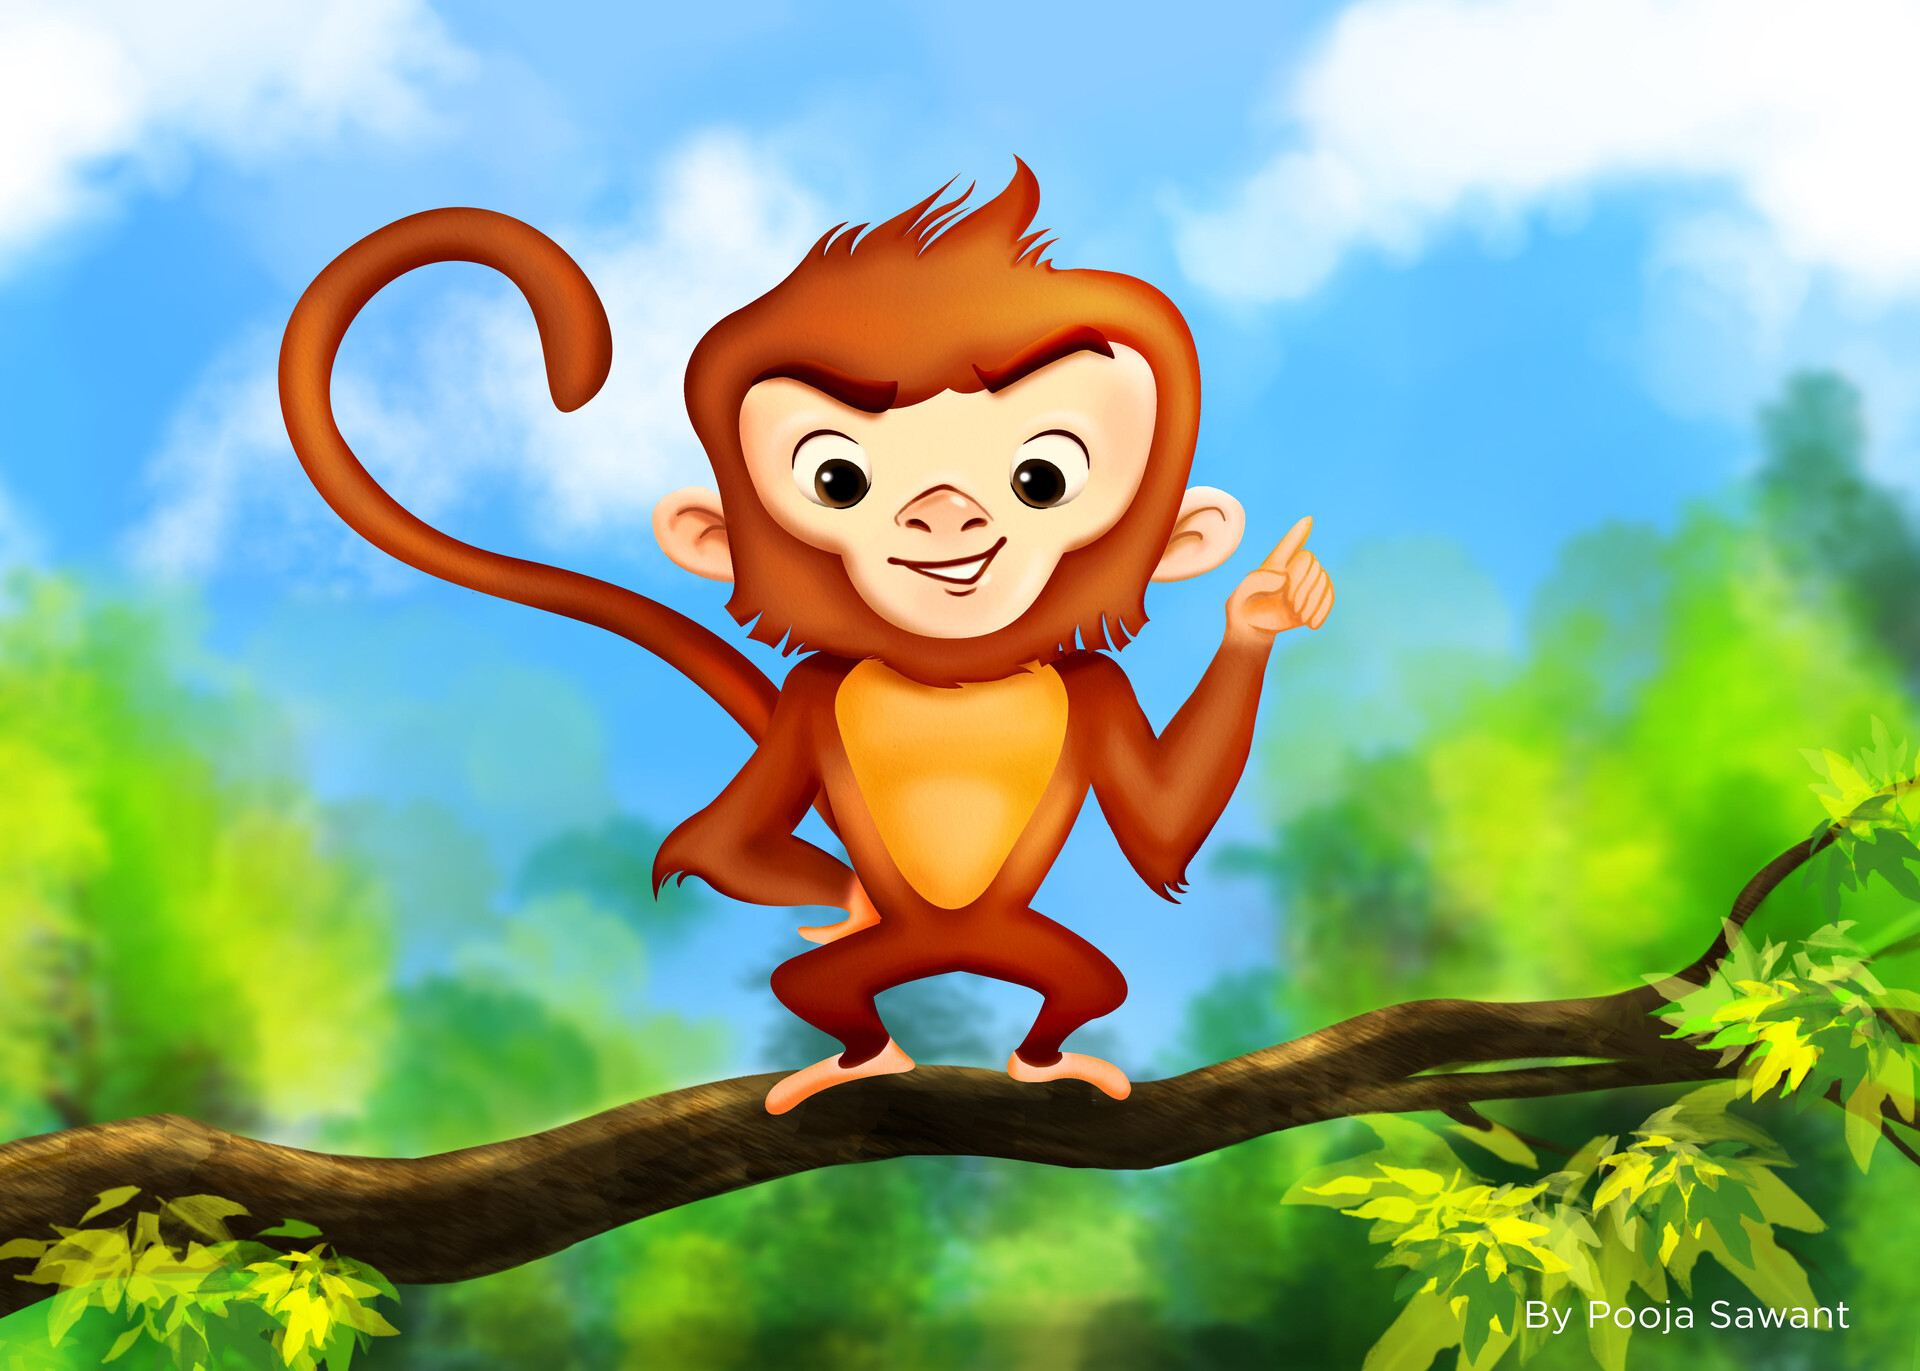 ArtStation - Monkey Character | Children's Illustration